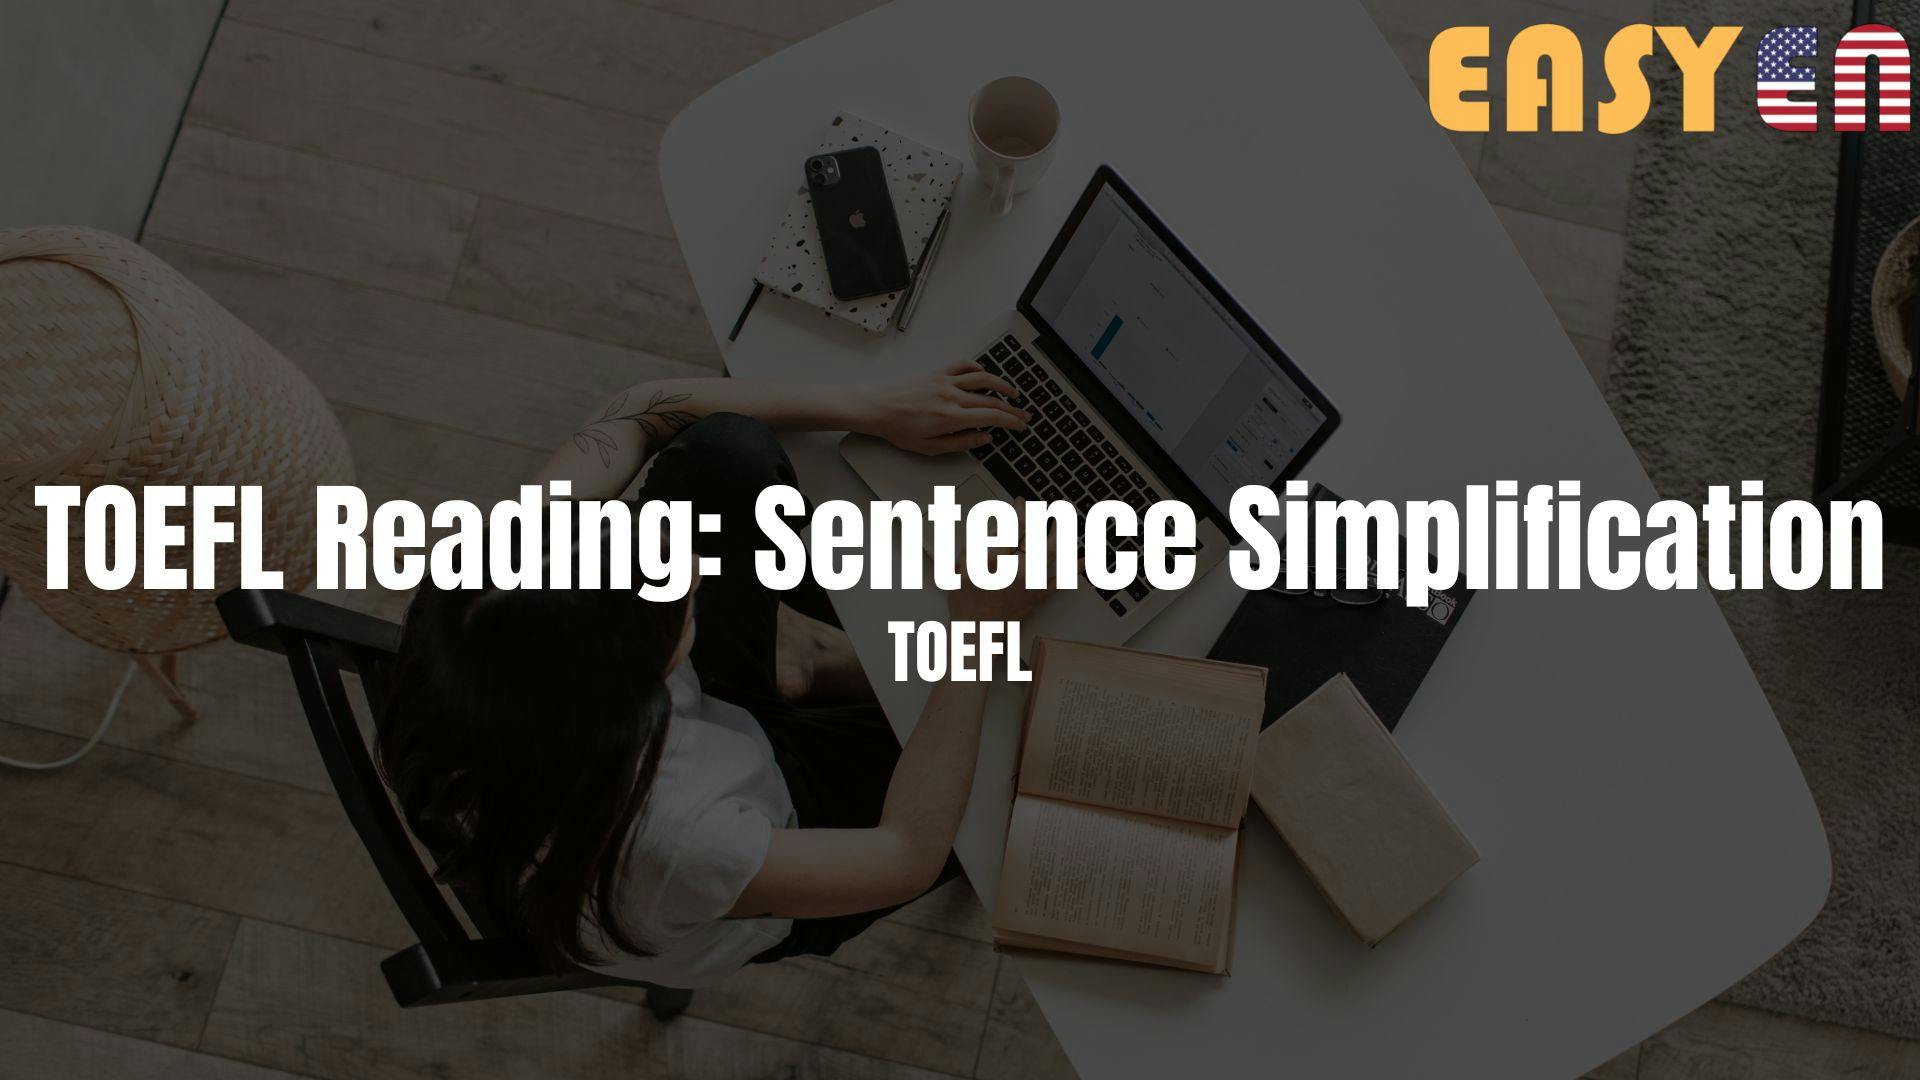 TOEFL Reading: Sentence Simplification